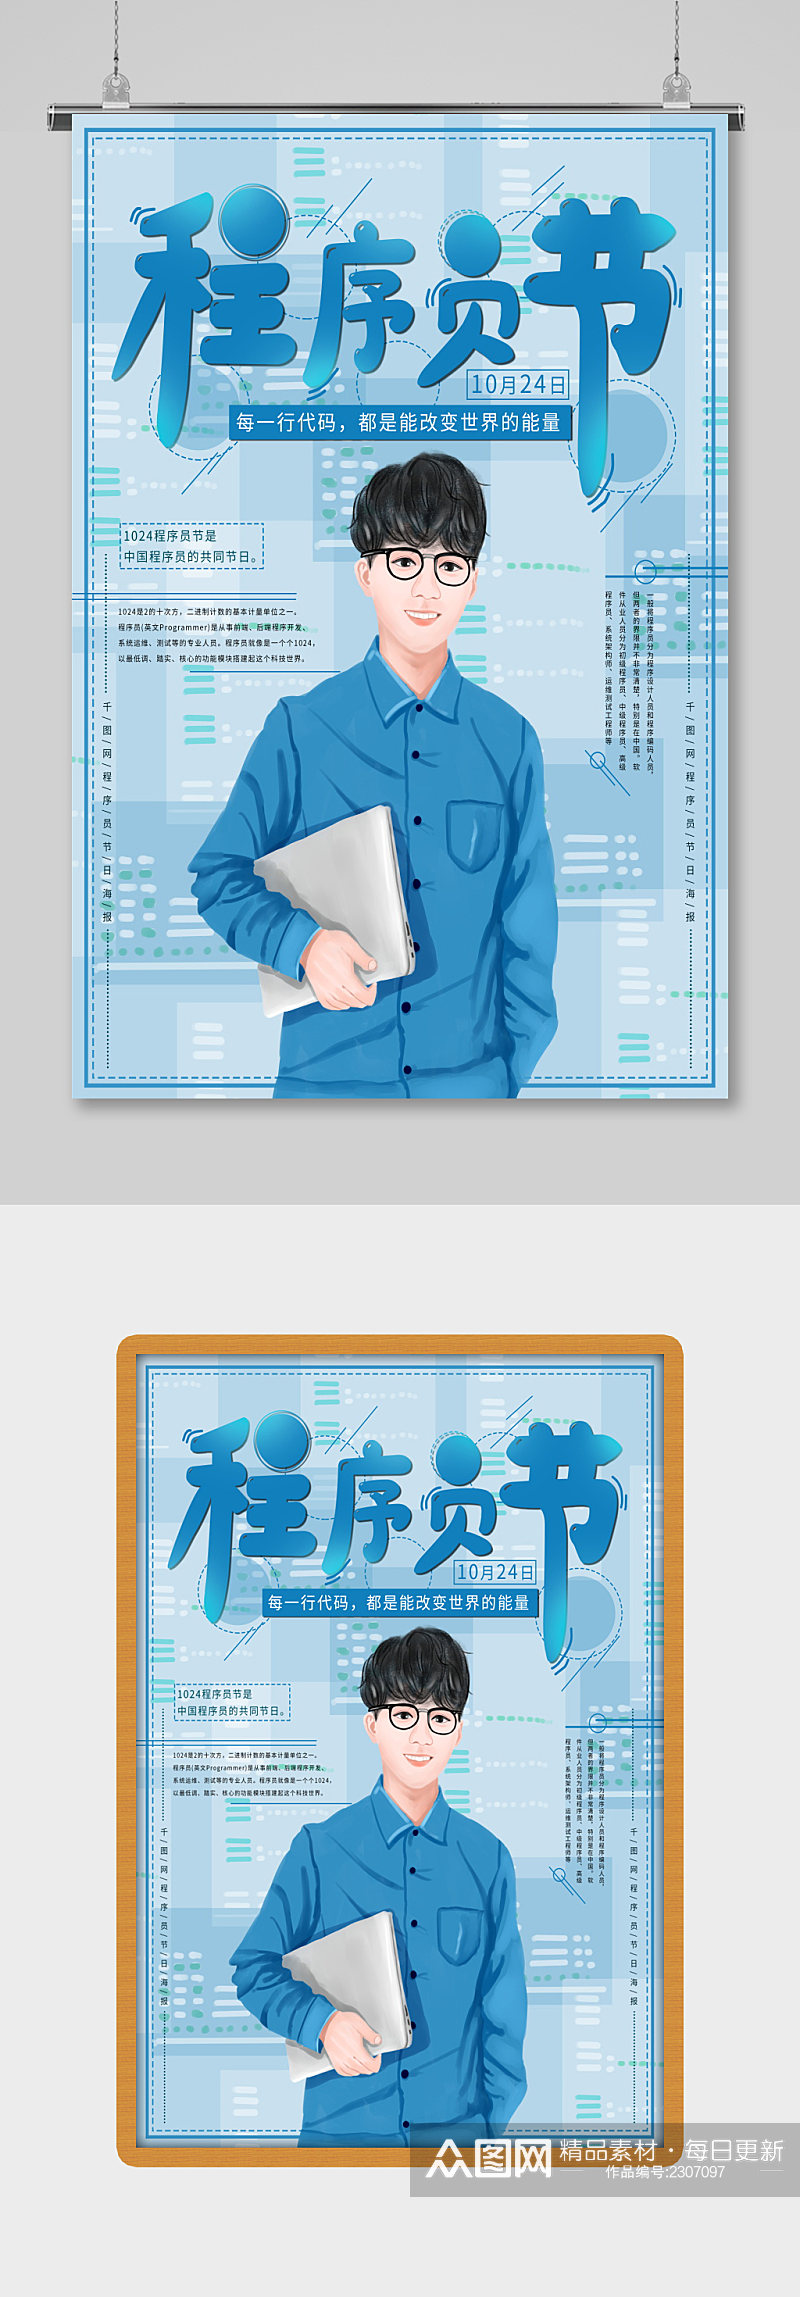 原创手绘蓝色清新程序员节海报素材